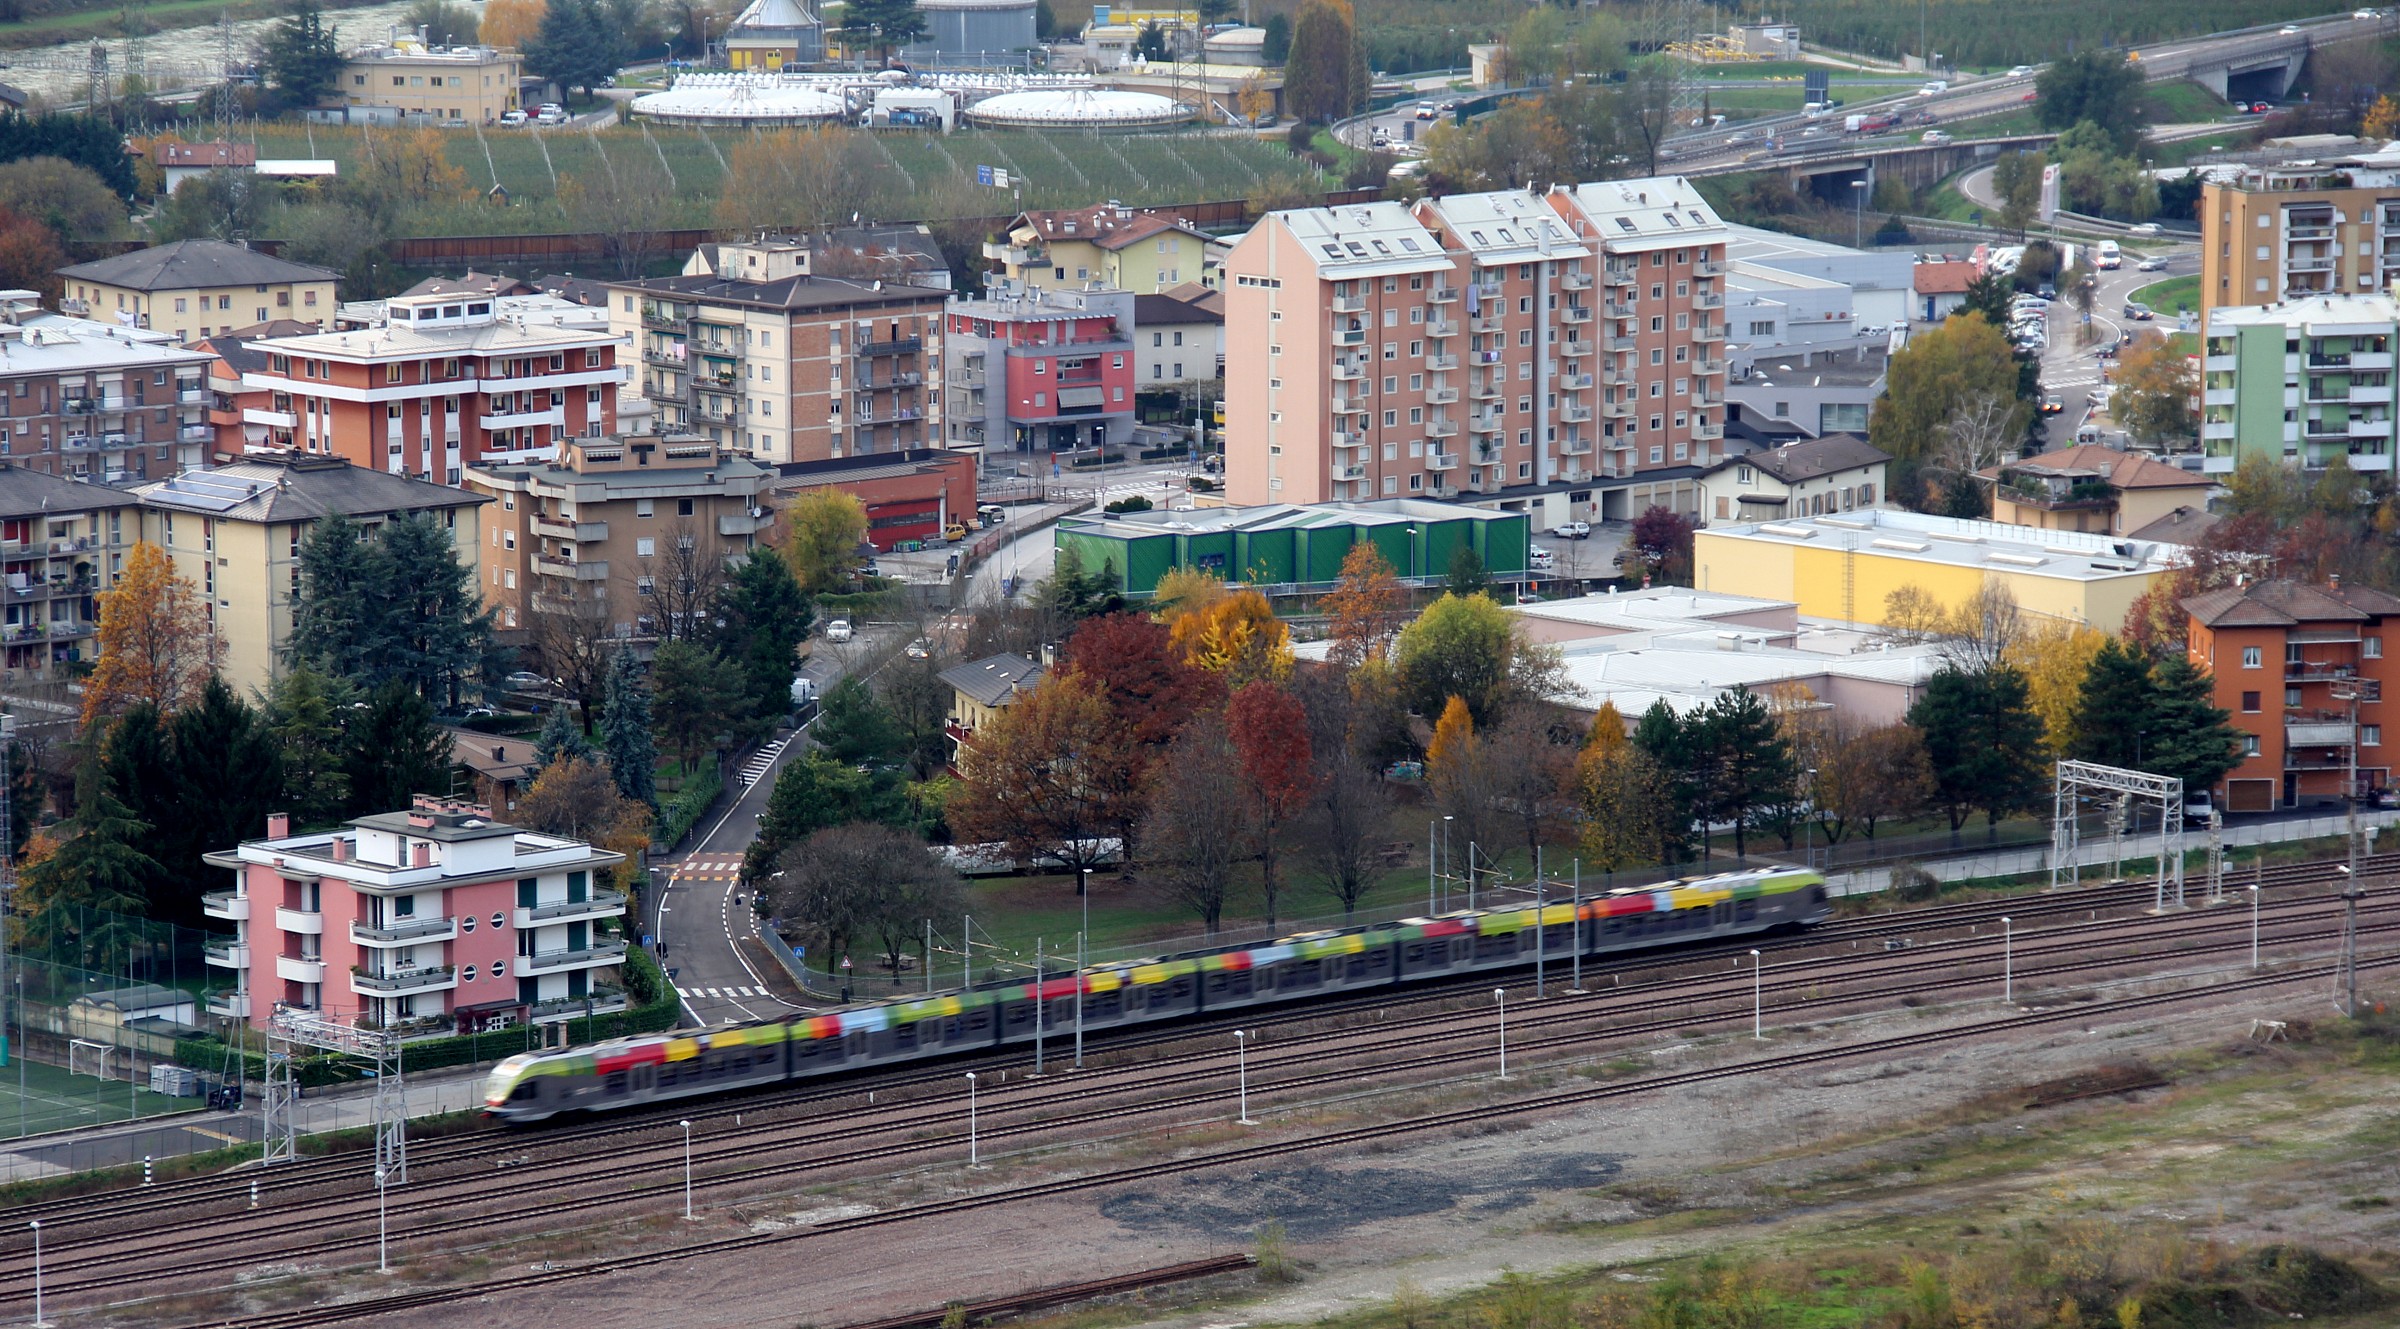 A train passes through Trent spring autumn...